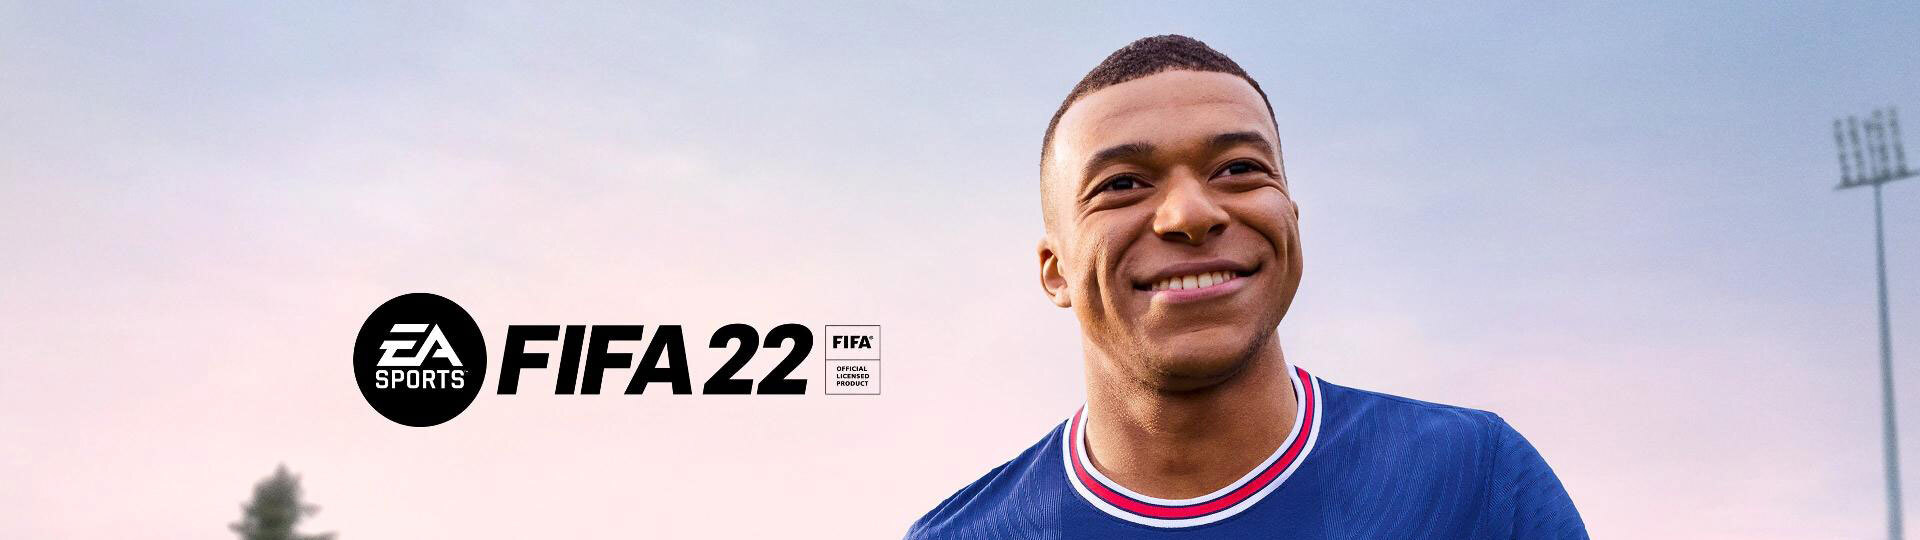 FIFA 22 – v podání next-genu | Recenze